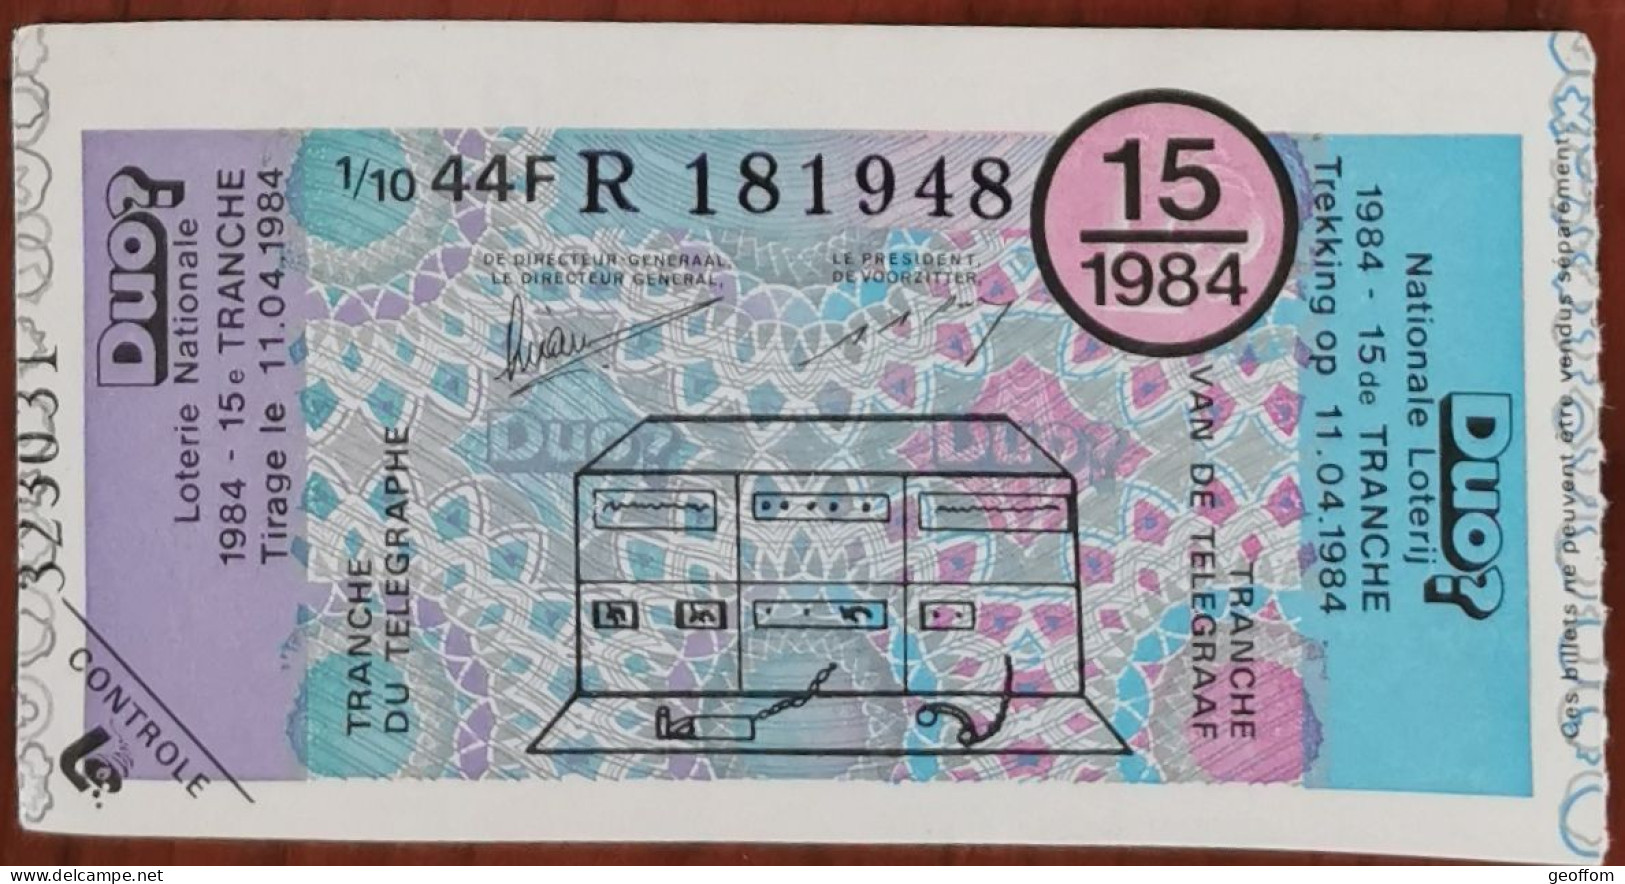 Billet De Loterie Nationale Belgique 1984 15e Tranche Du Télégraphe - 11-4-1984 - Billetes De Lotería